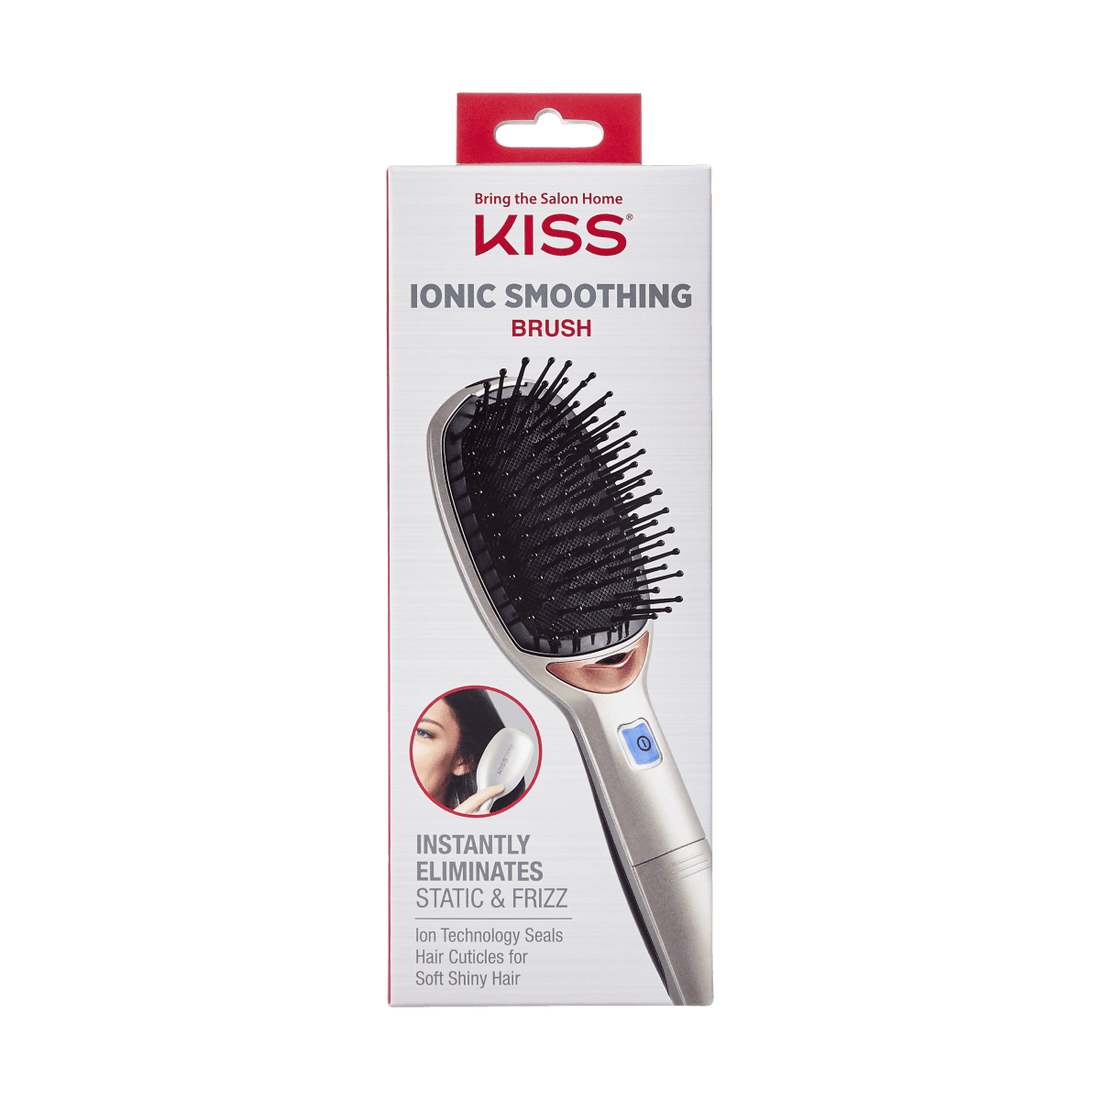 KISS Ionic Smoothing Brush